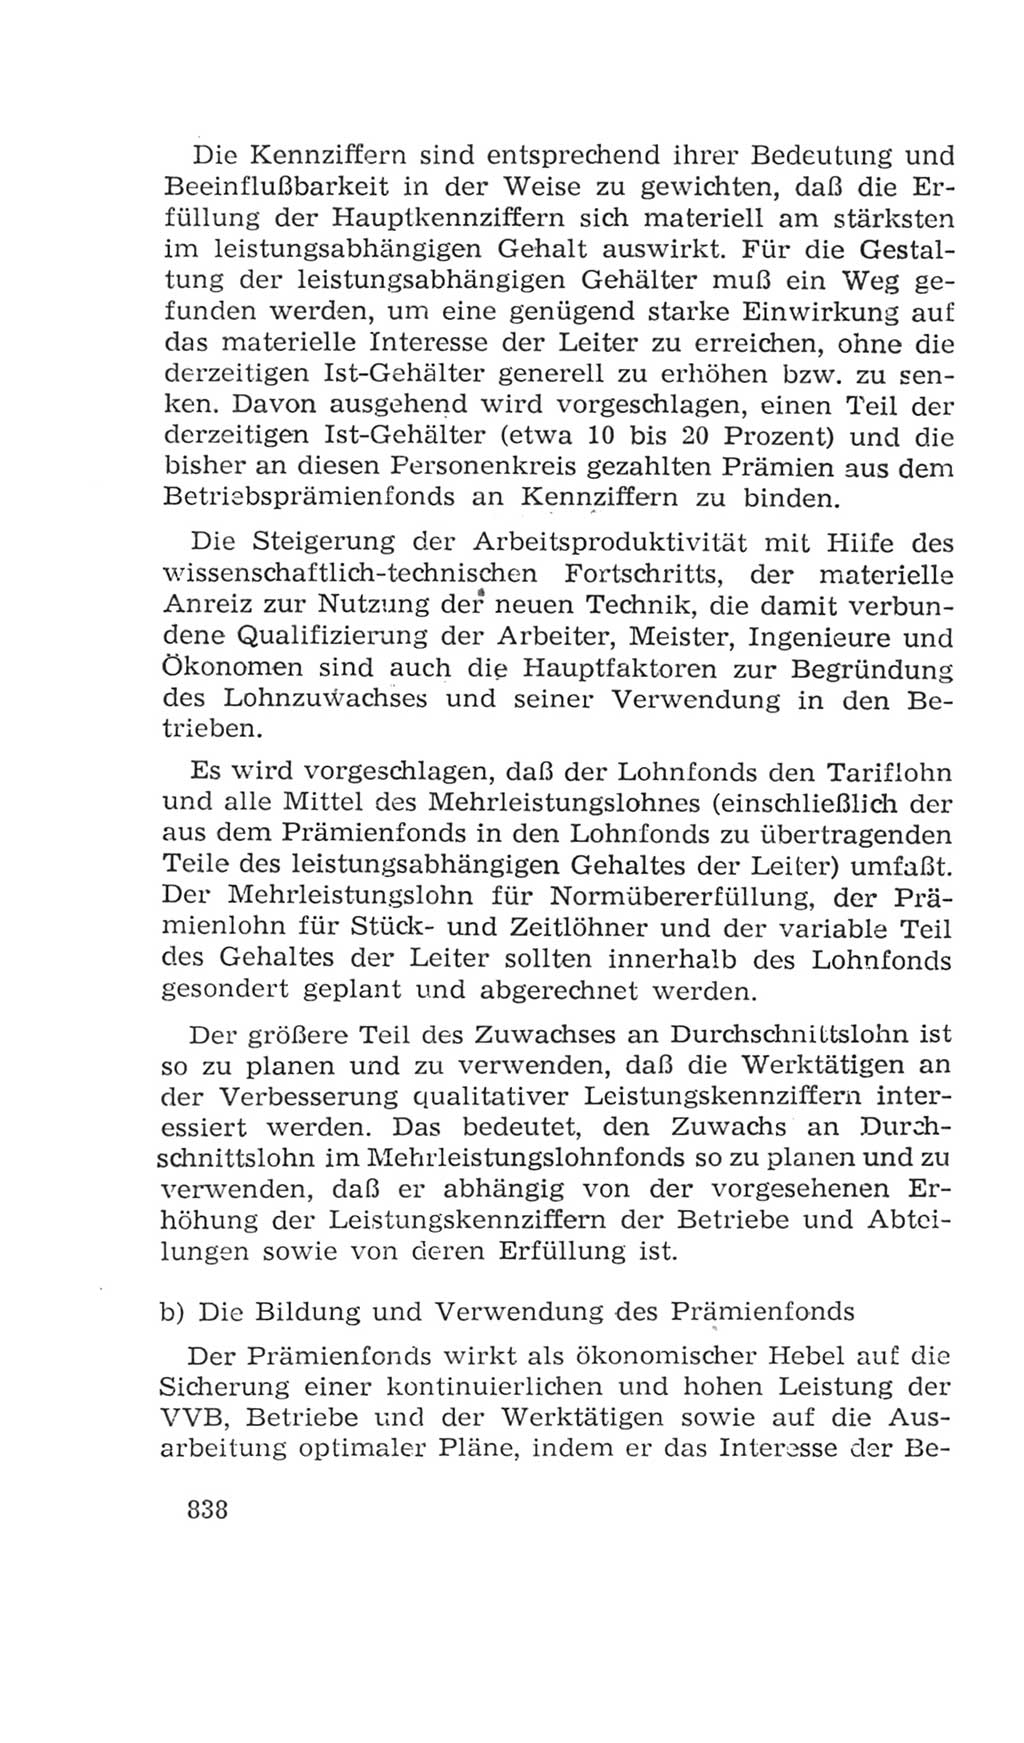 Volkskammer (VK) der Deutschen Demokratischen Republik (DDR), 4. Wahlperiode 1963-1967, Seite 838 (VK. DDR 4. WP. 1963-1967, S. 838)